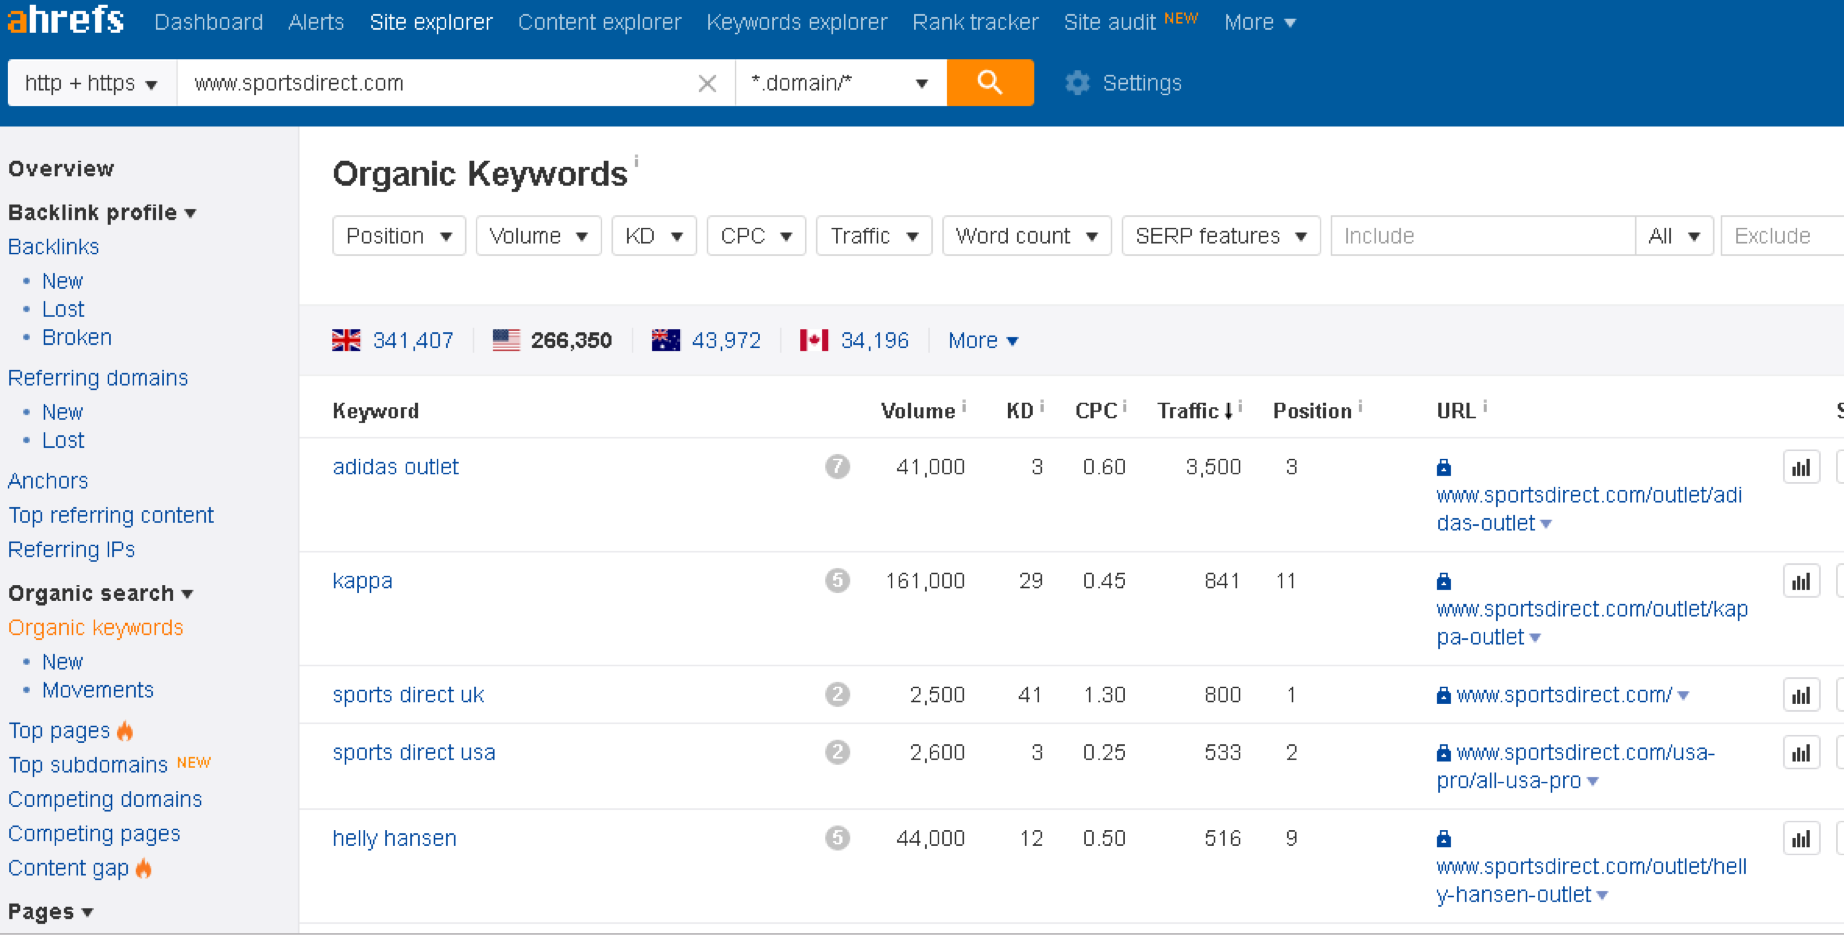 keyword url rankings